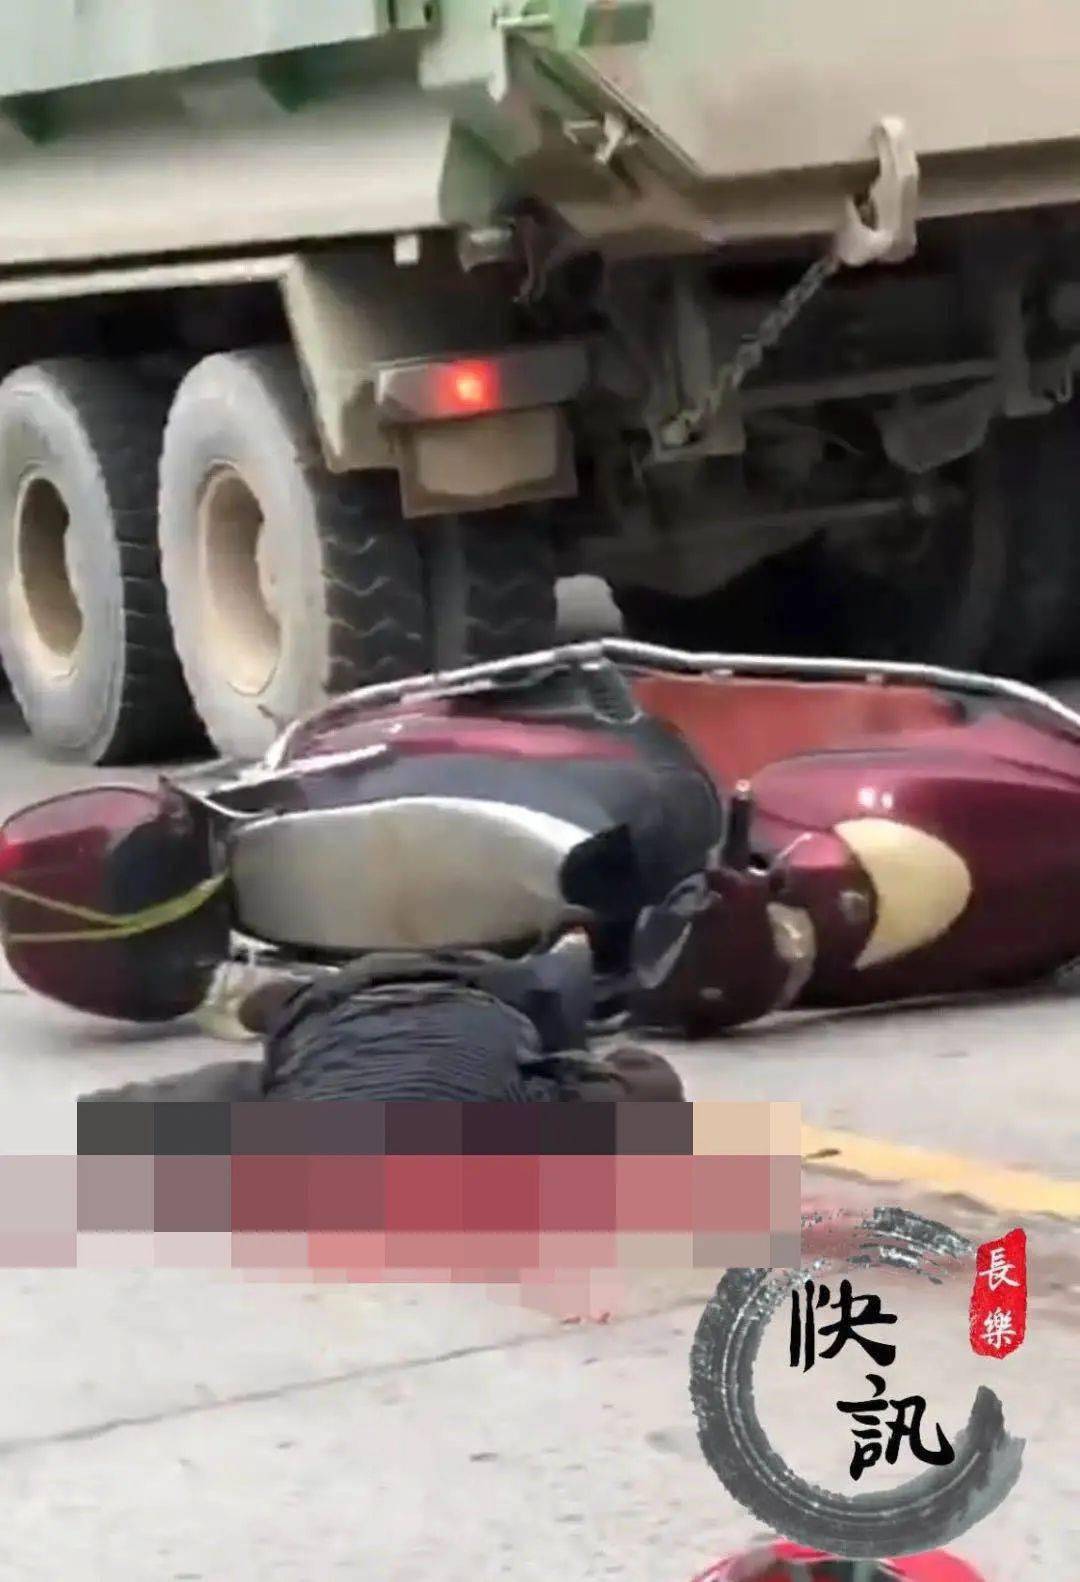 惨烈!福州街头突发严重车祸!一人当场身亡!头部破裂,疑似大货车.